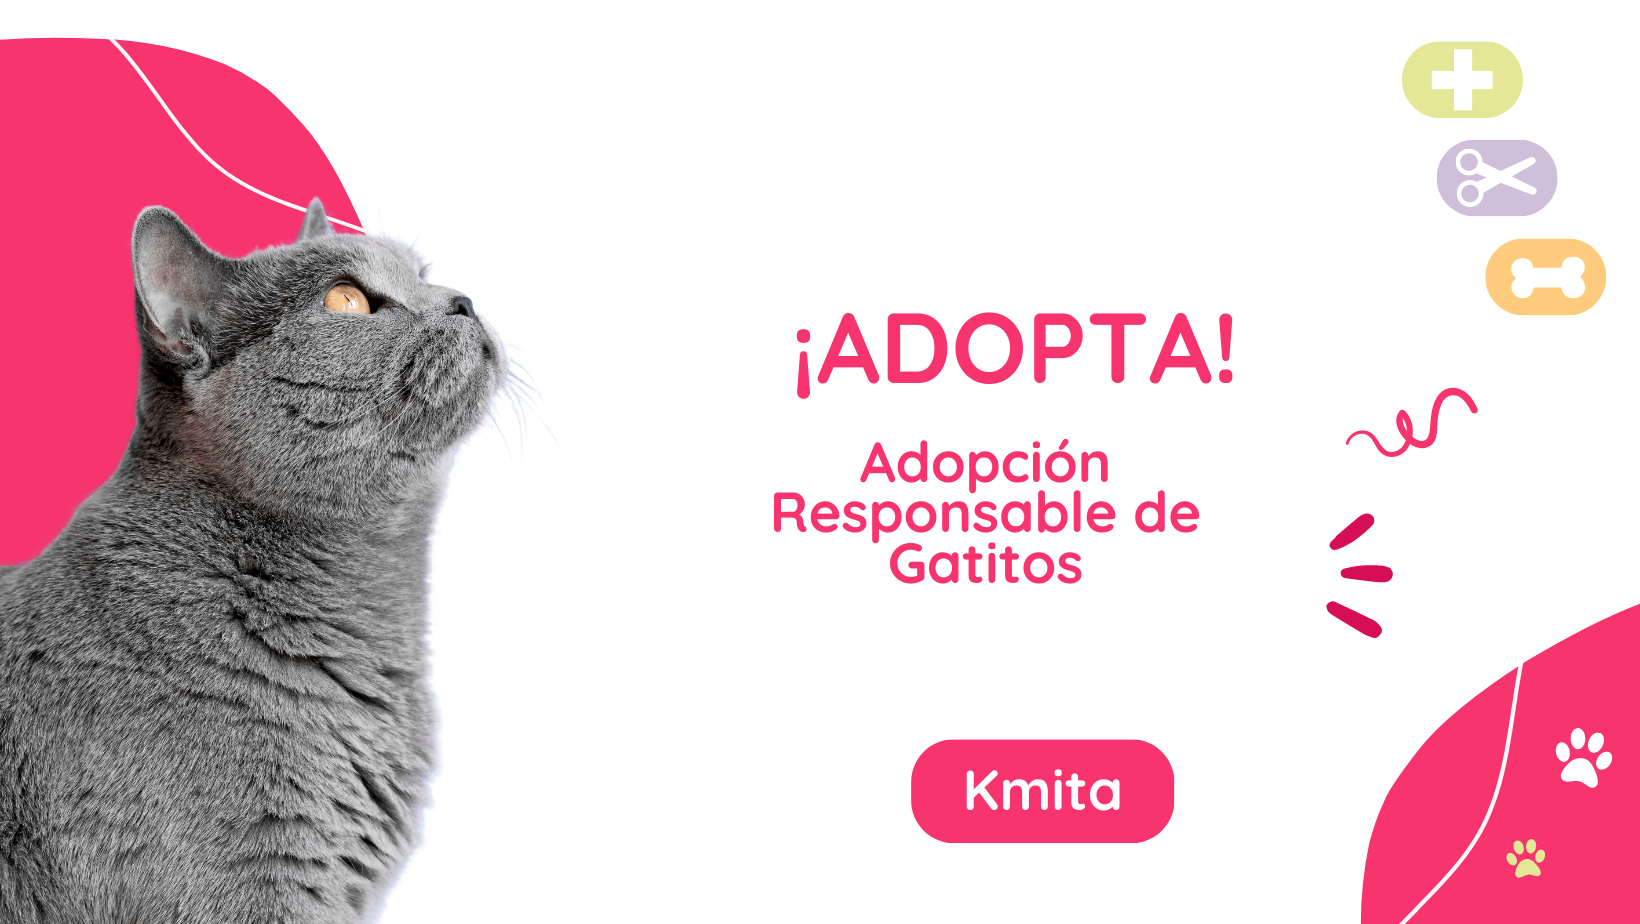 Adopción Responsable de Gatitos